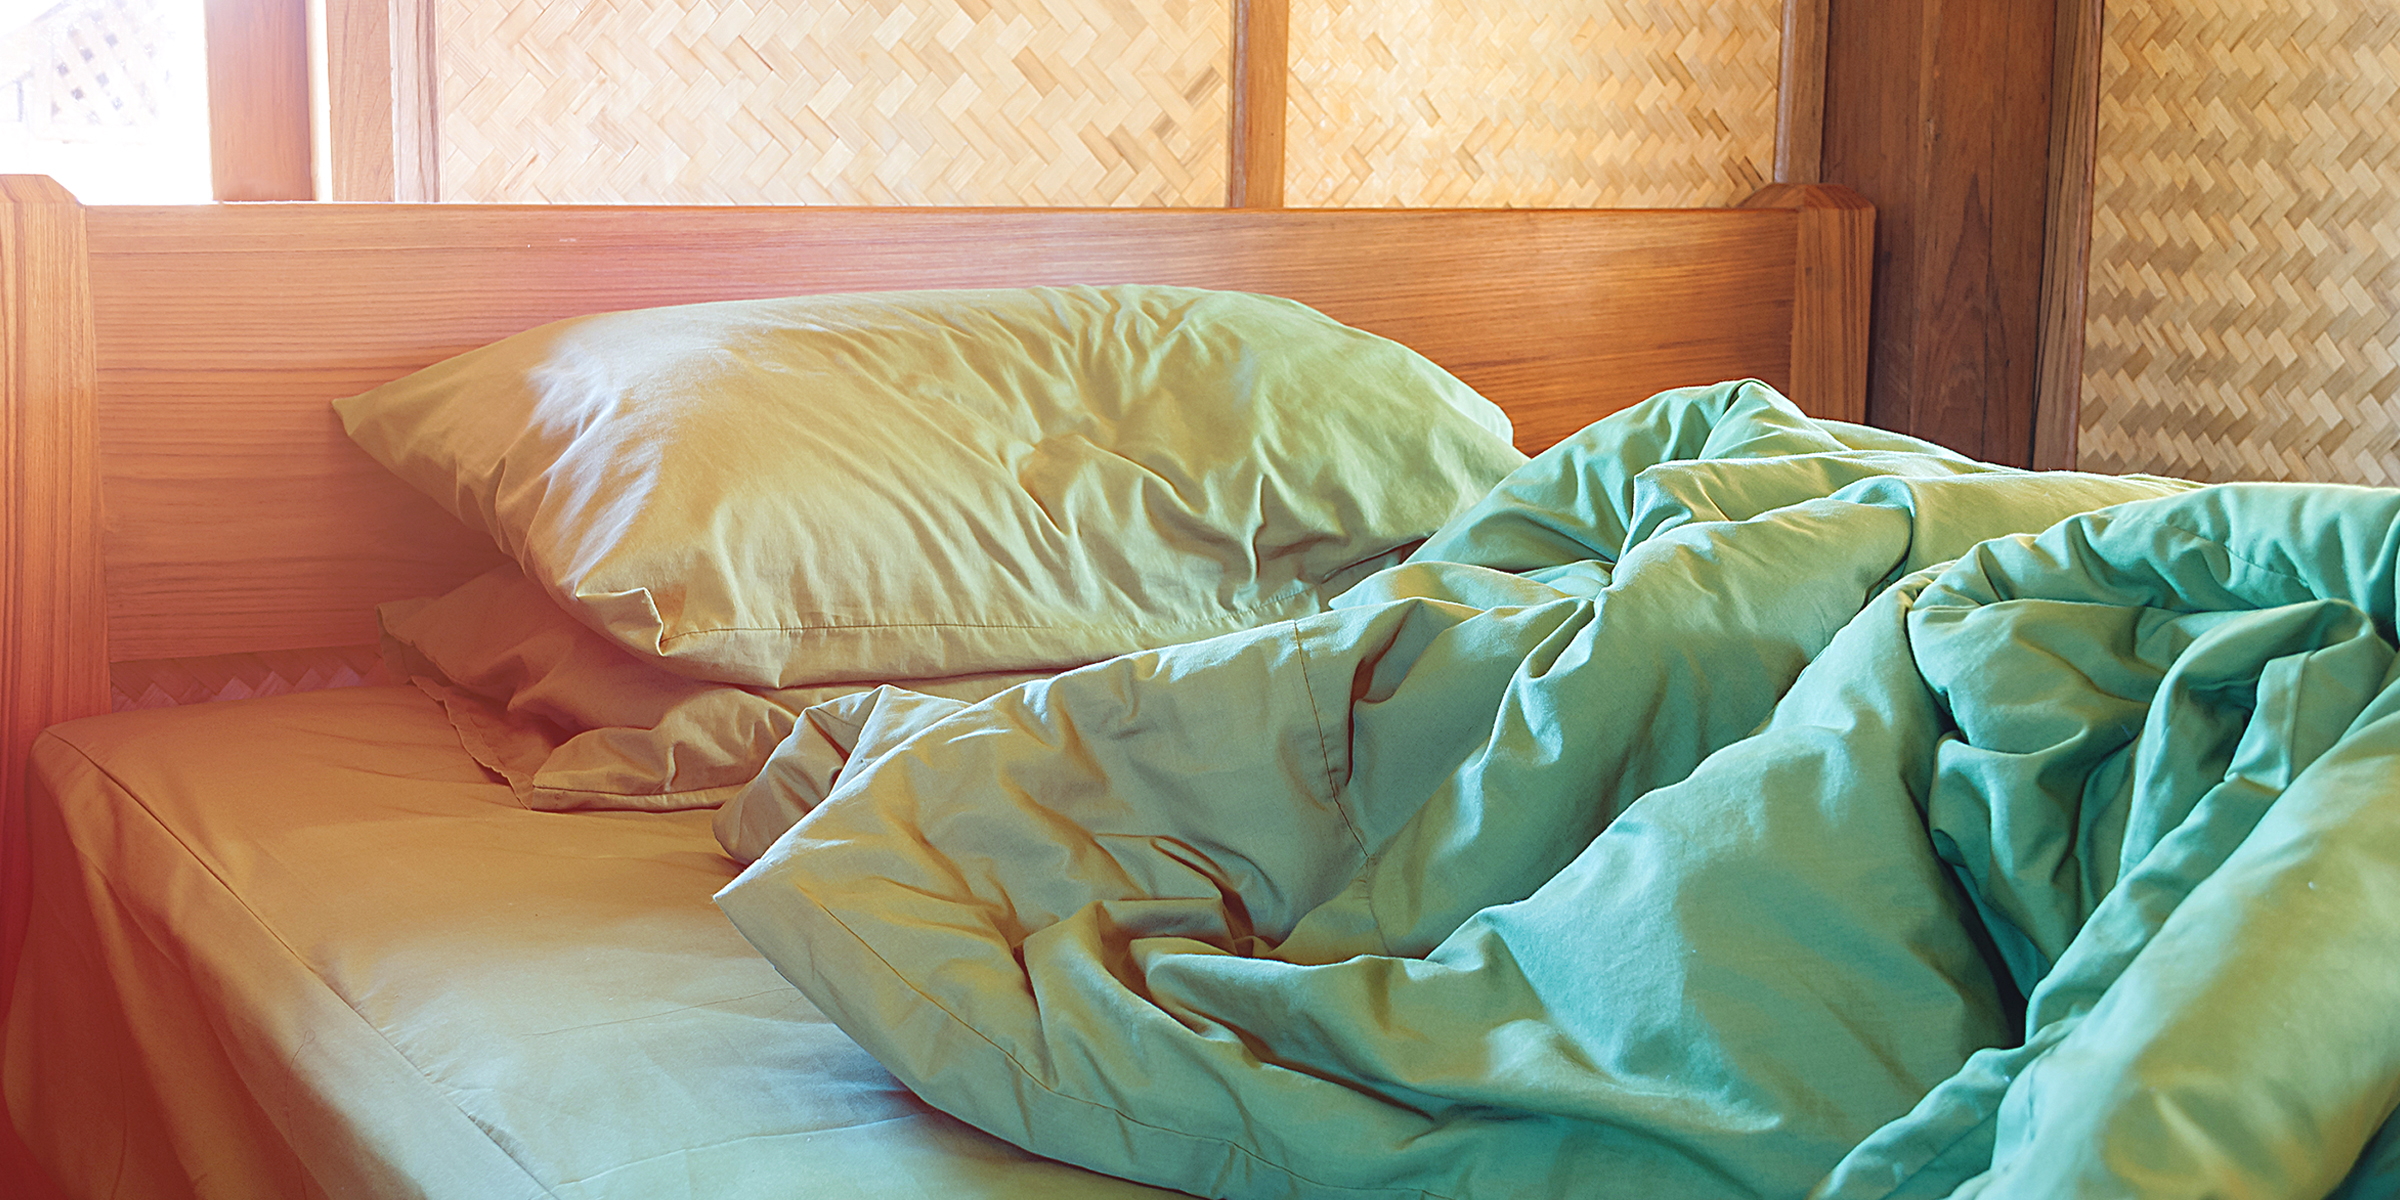 Un lit défait | Source : Shutterstock